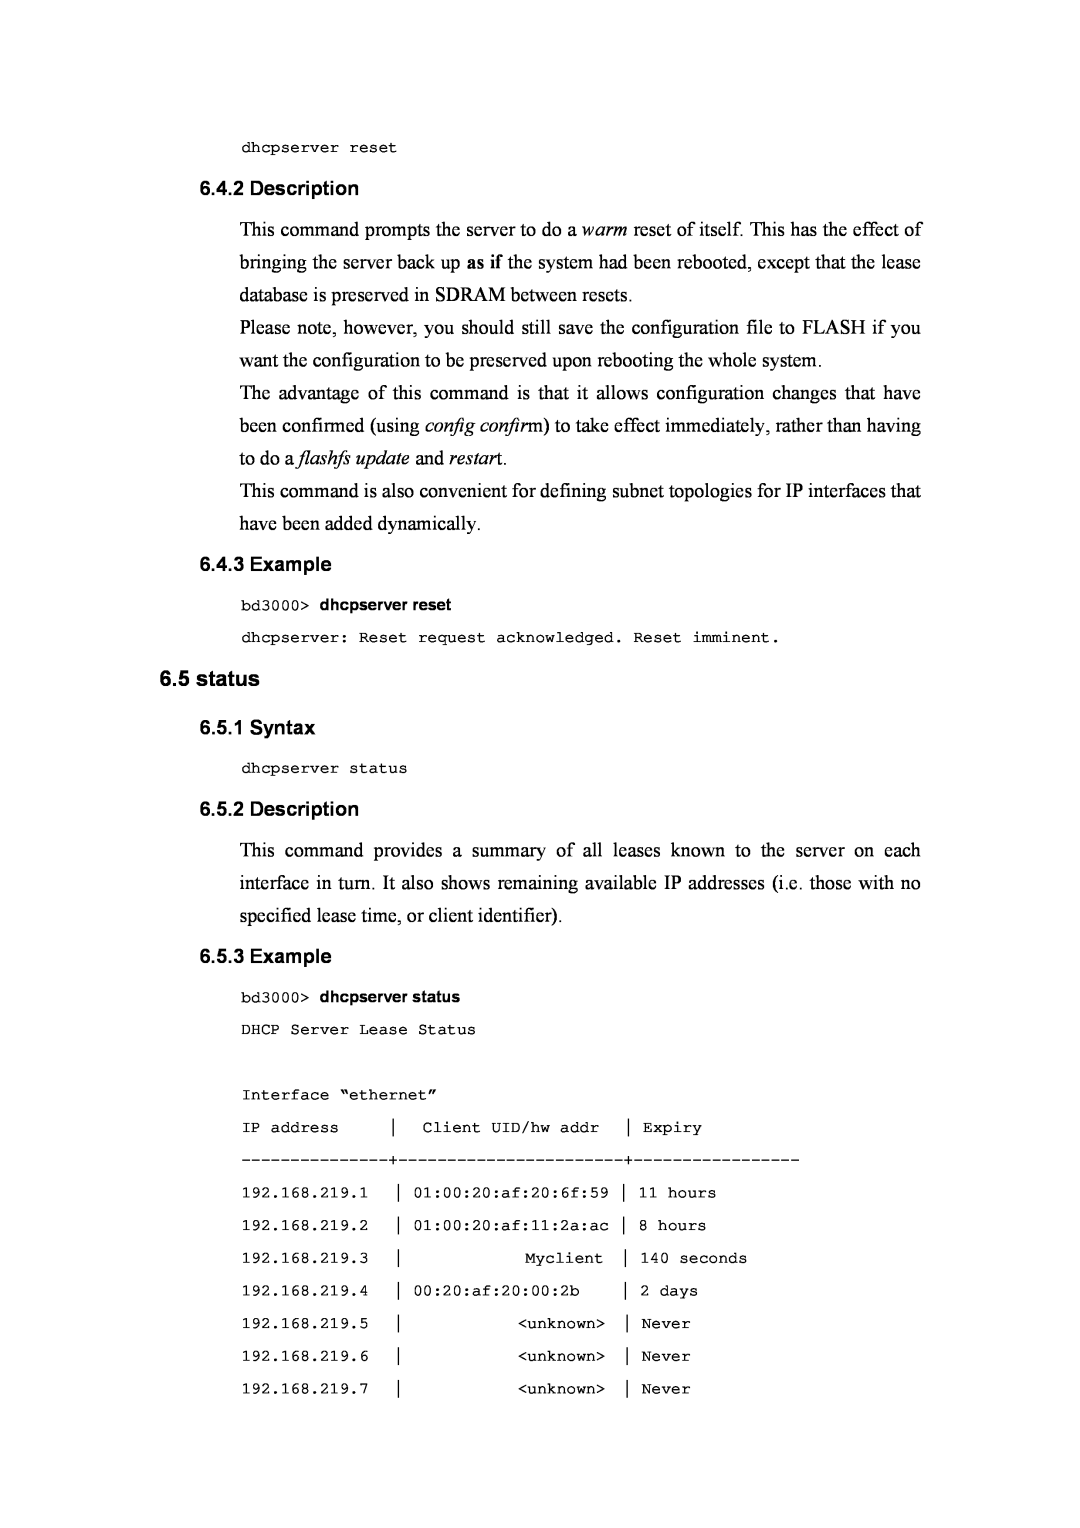 Atlantis Land A02-RA(Atmos)_ME01 manual status, Description, Example, Syntax 